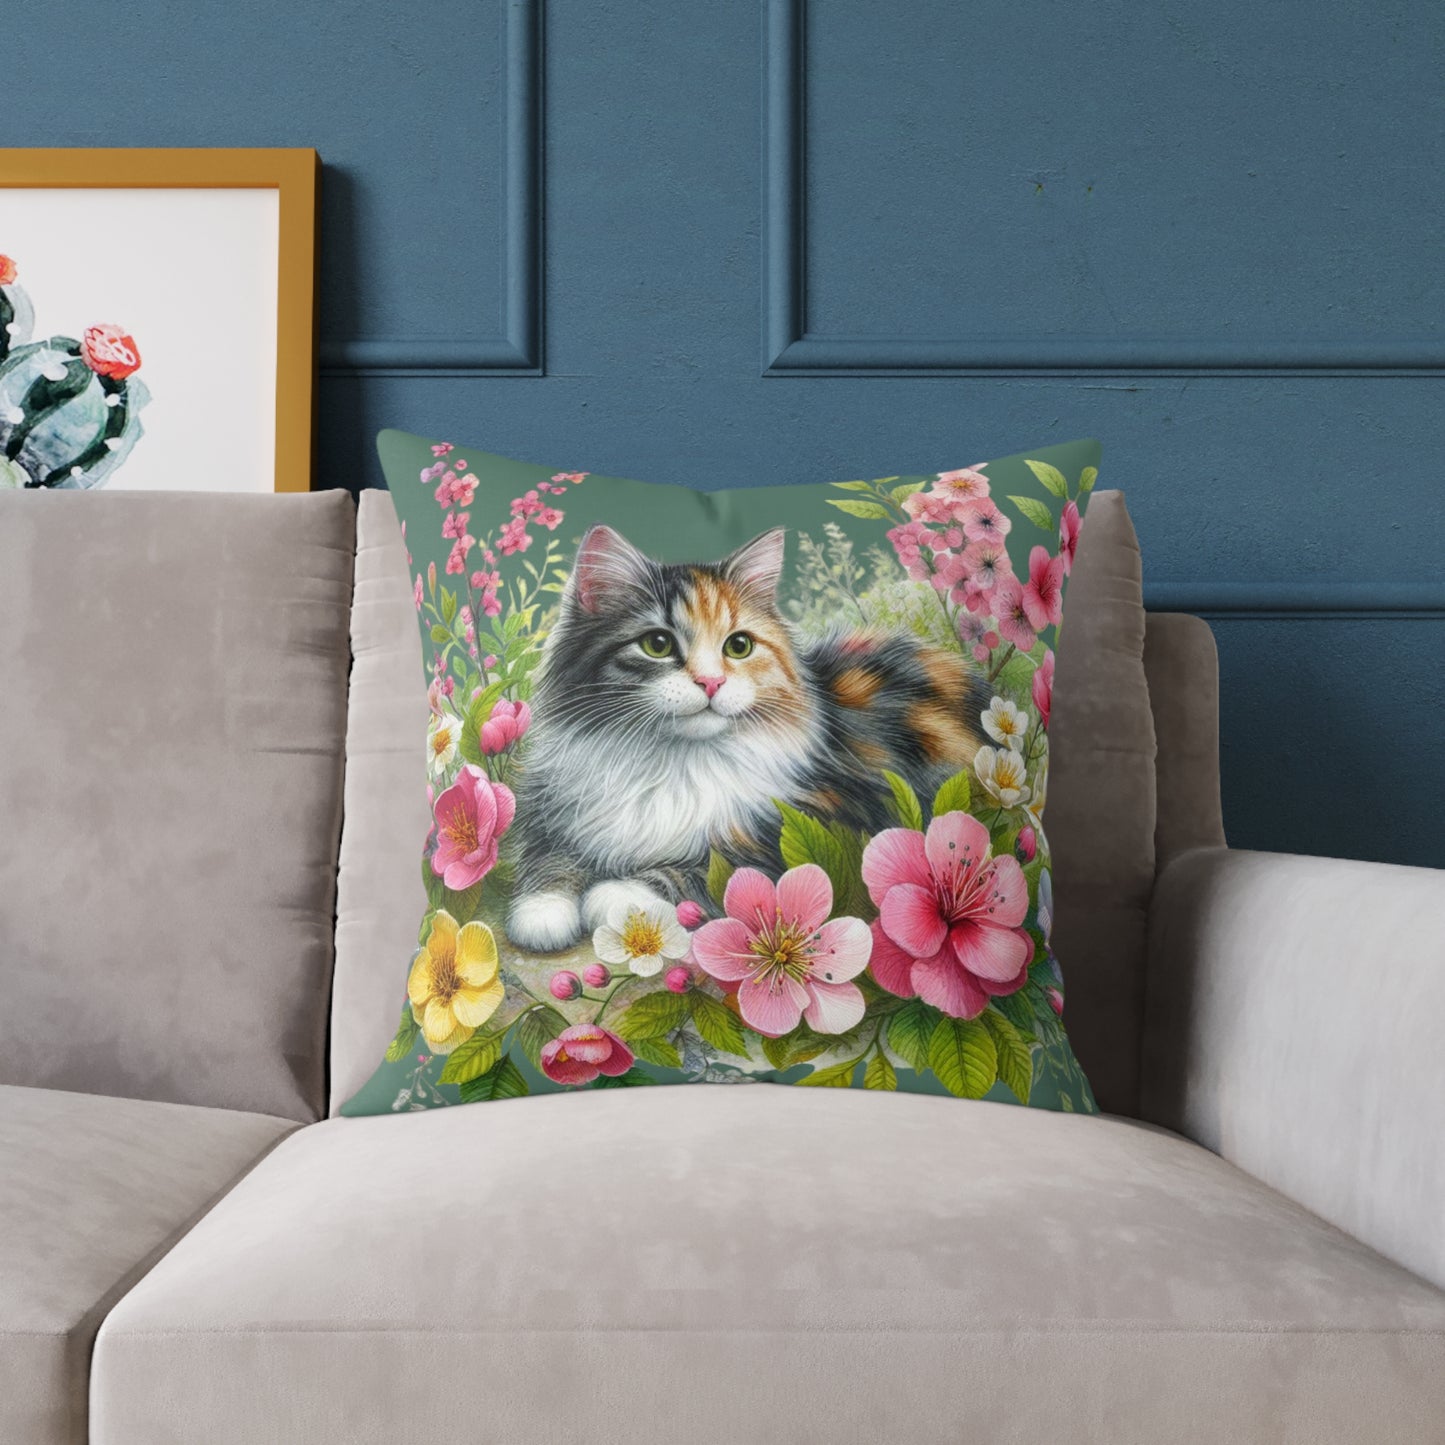 Cat Cushion